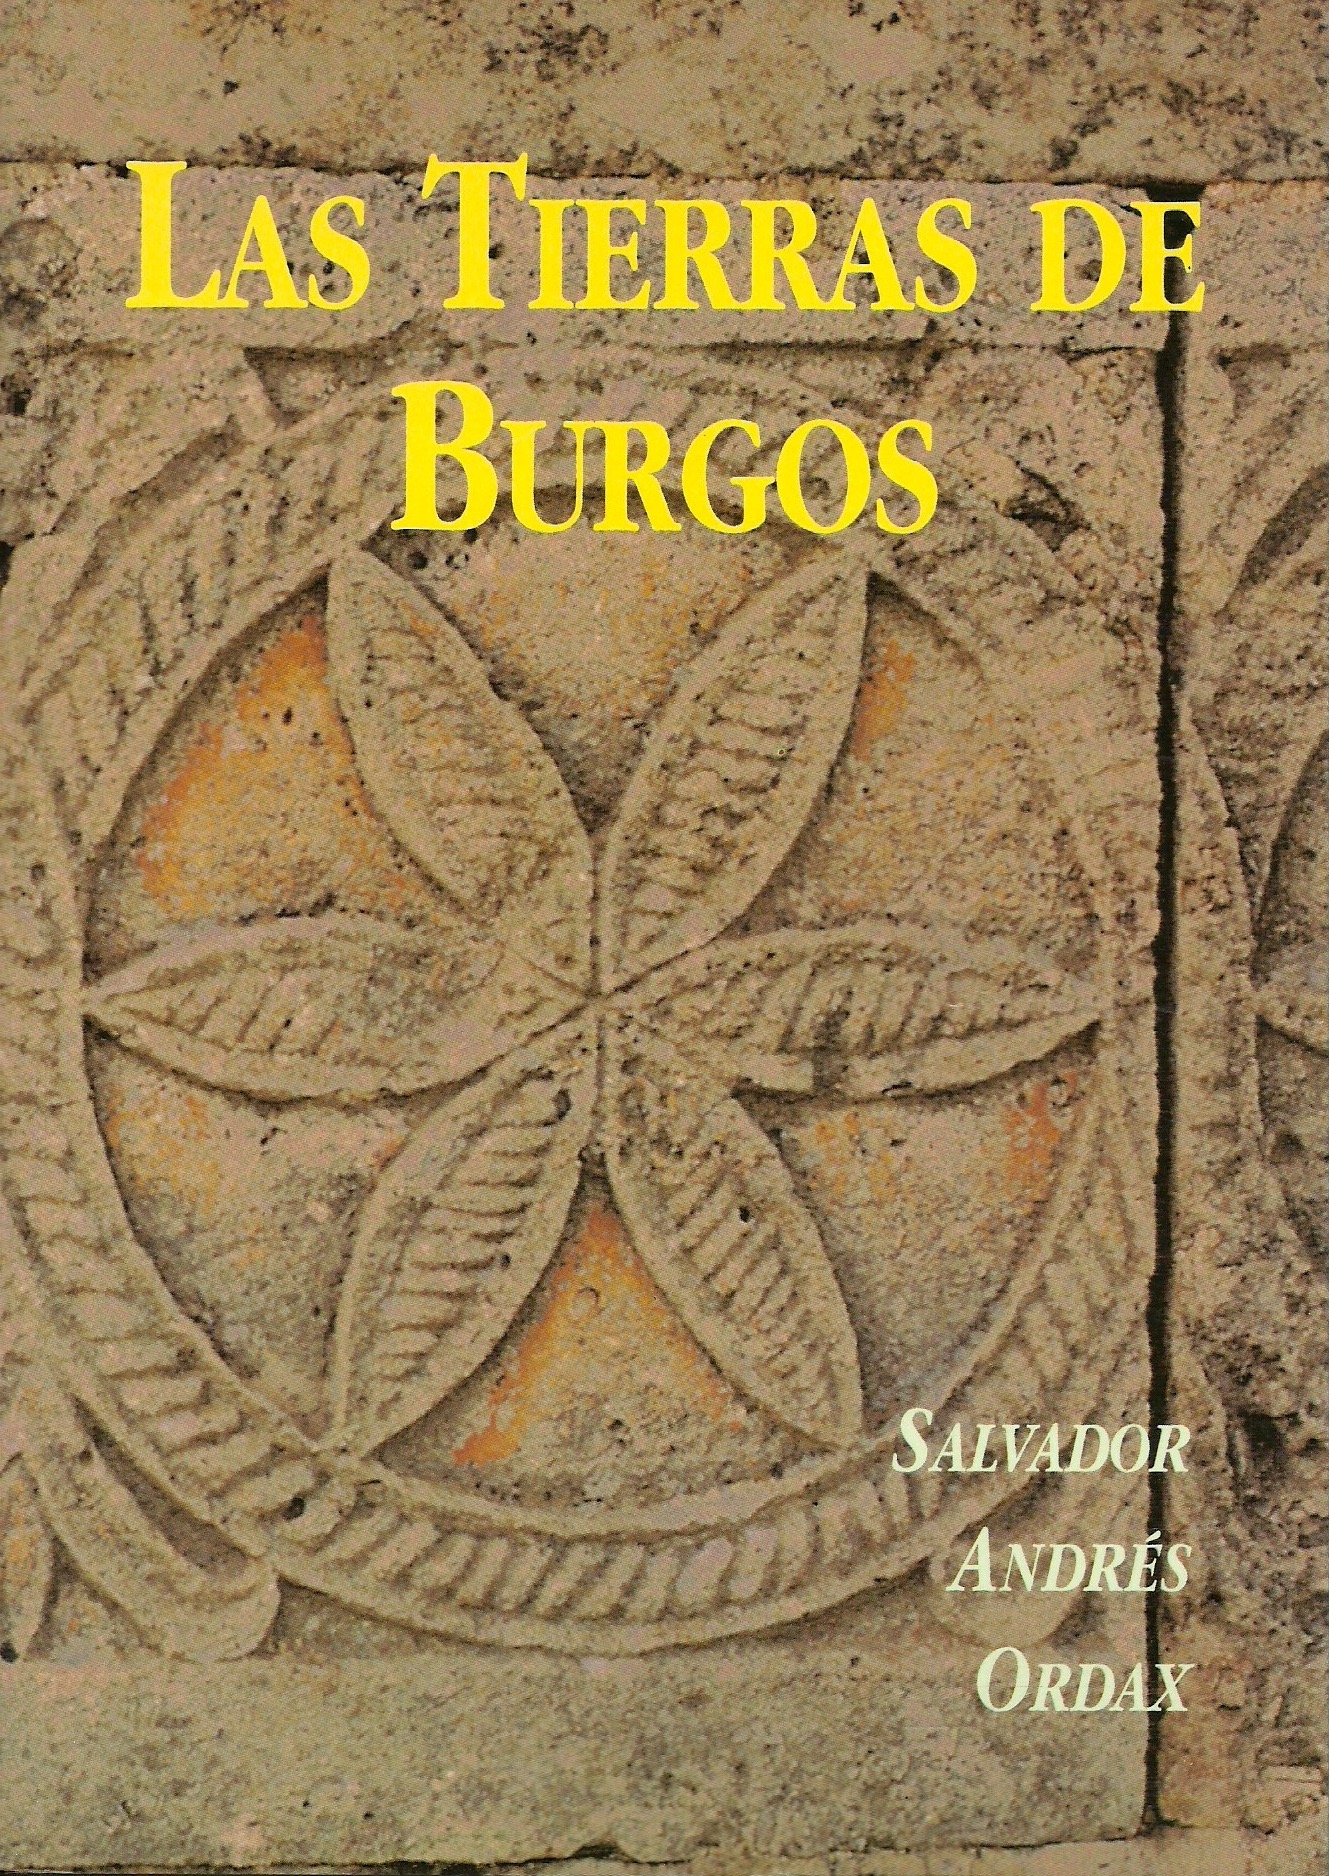 Imagen de portada del libro Las tierras de Burgos